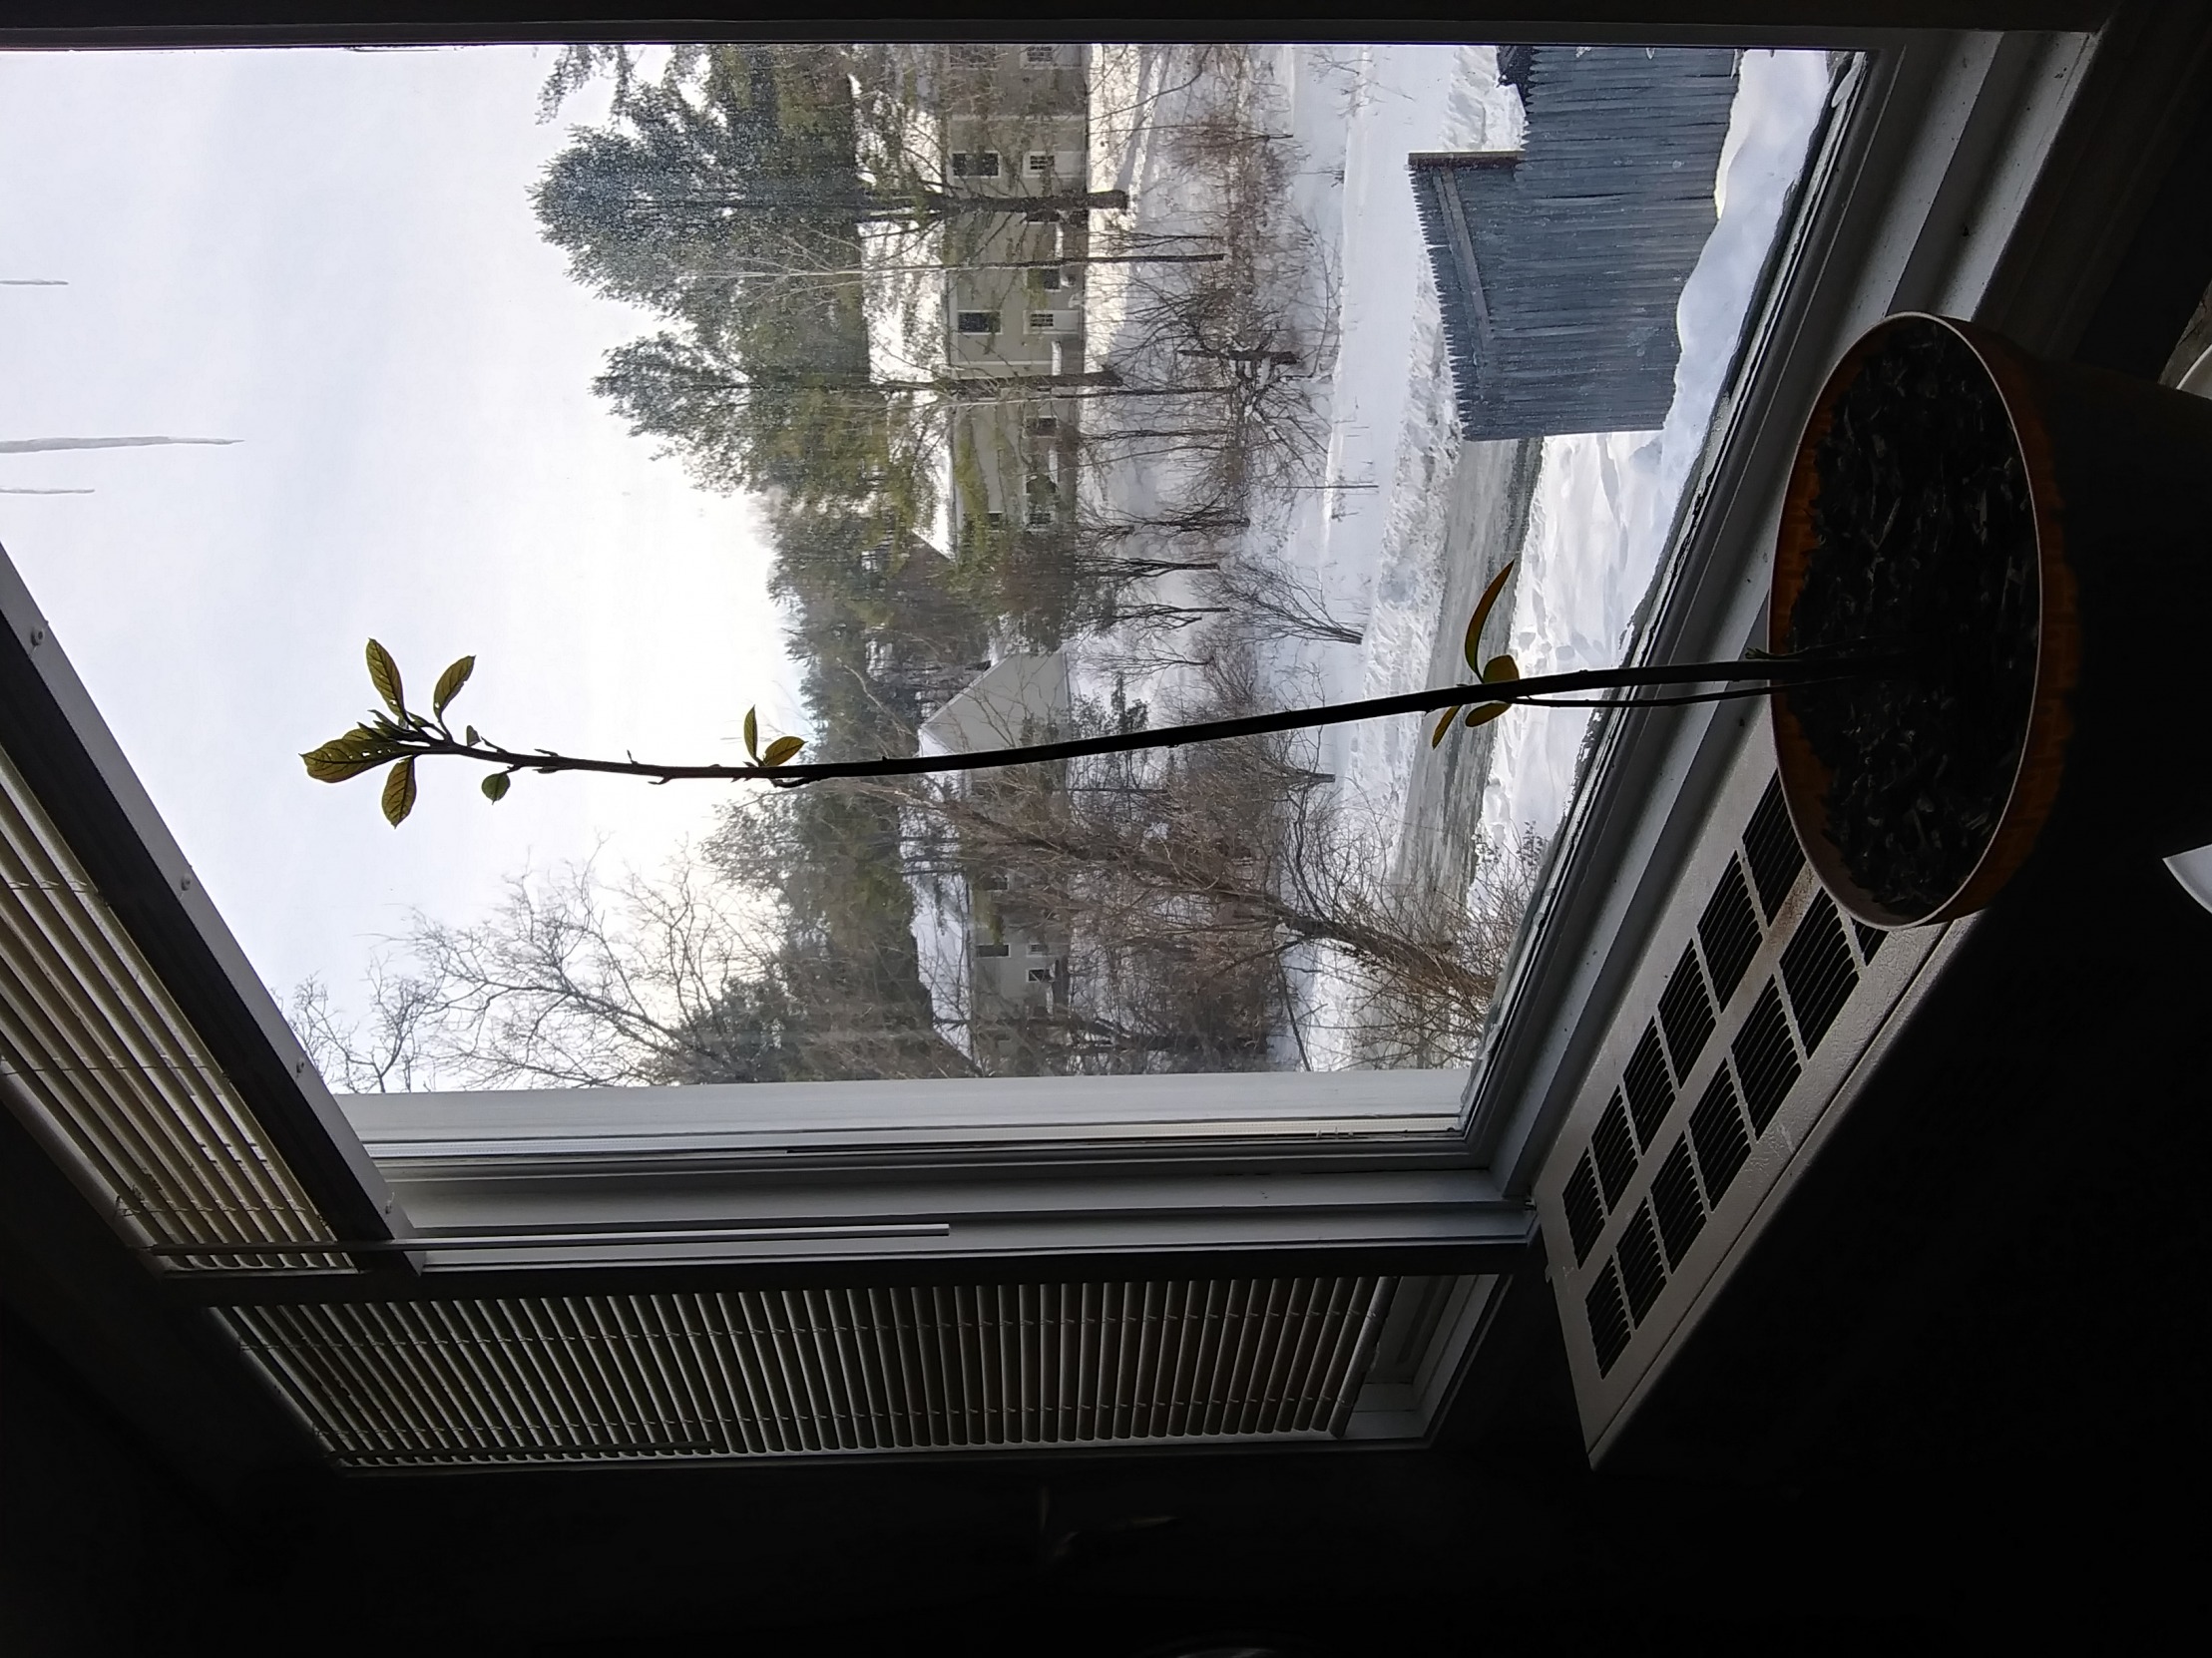 Avocado plant in snowy scene window Blank Meme Template